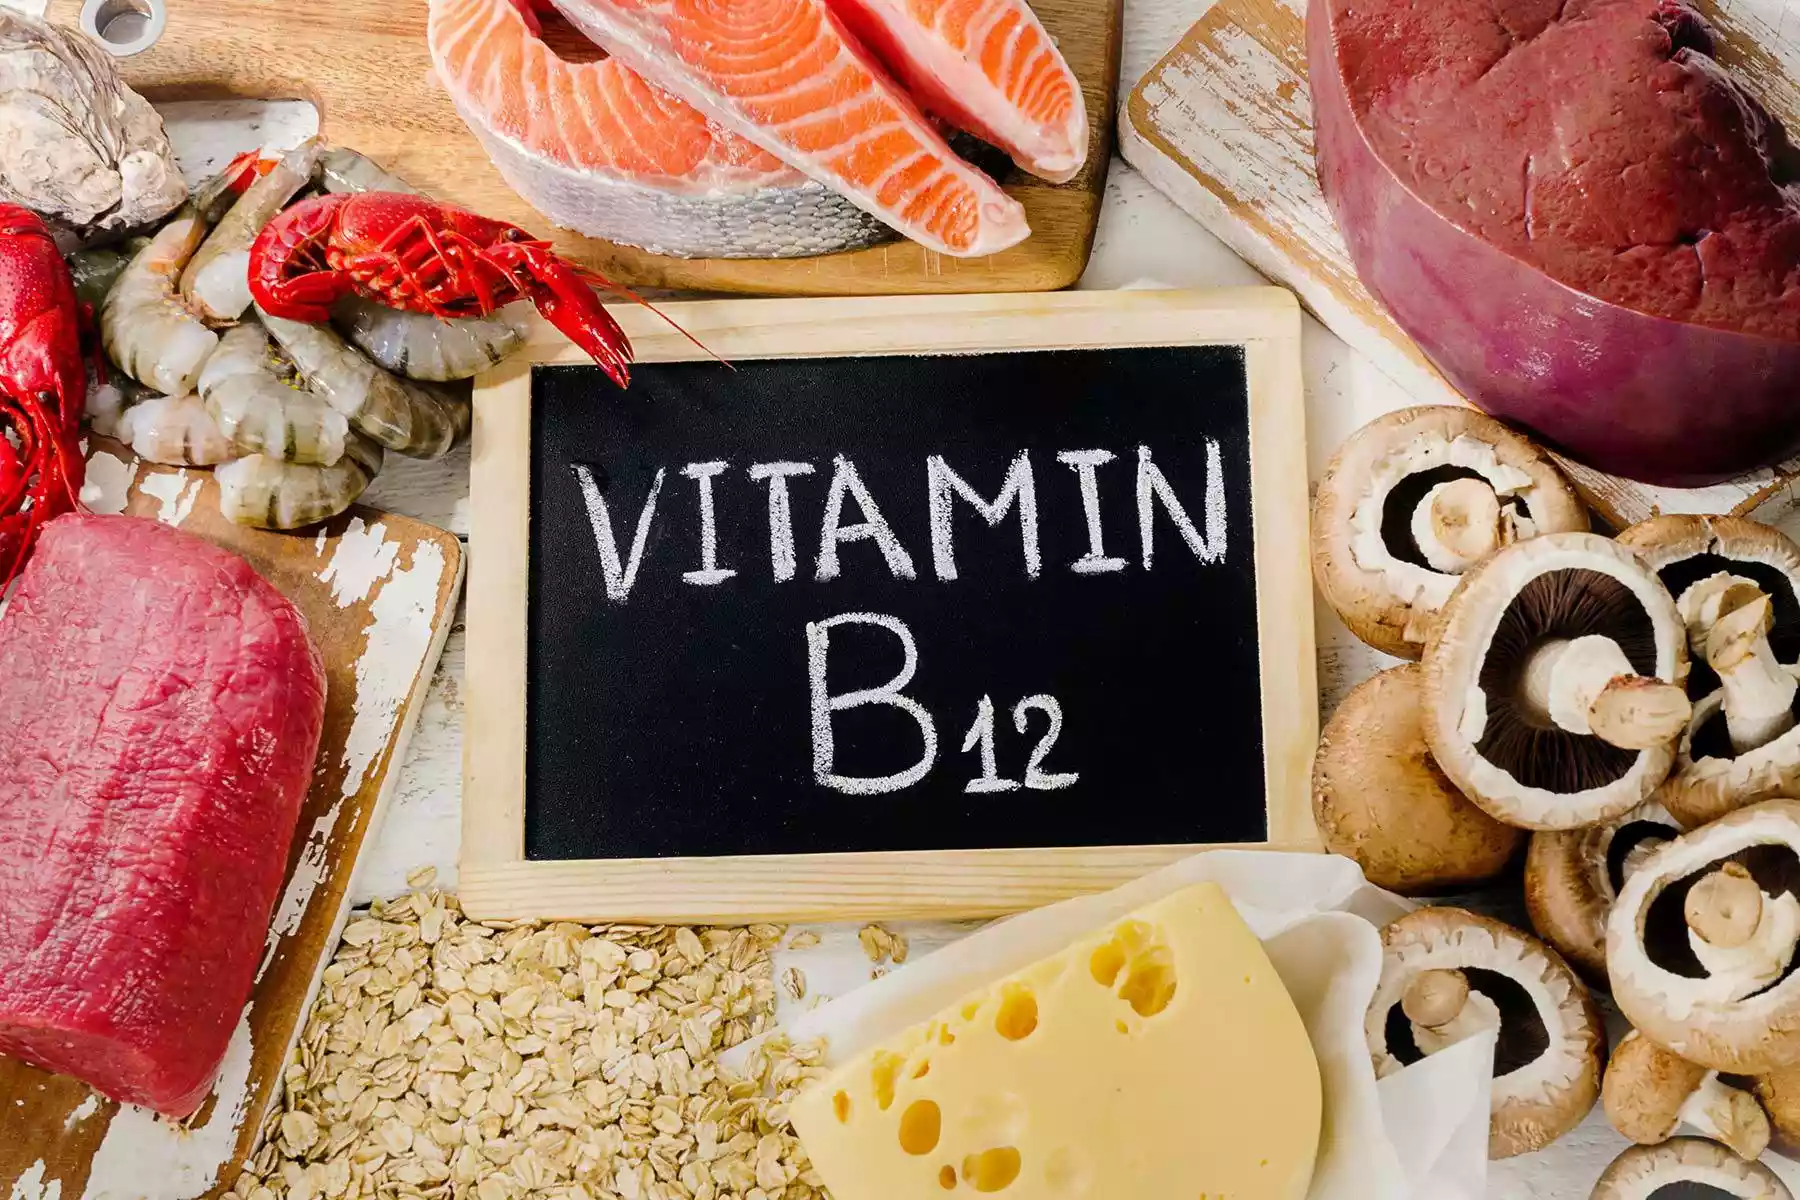 انتبه.. أعراض نقص فيتامين B12 قد تُدمر صحتك!